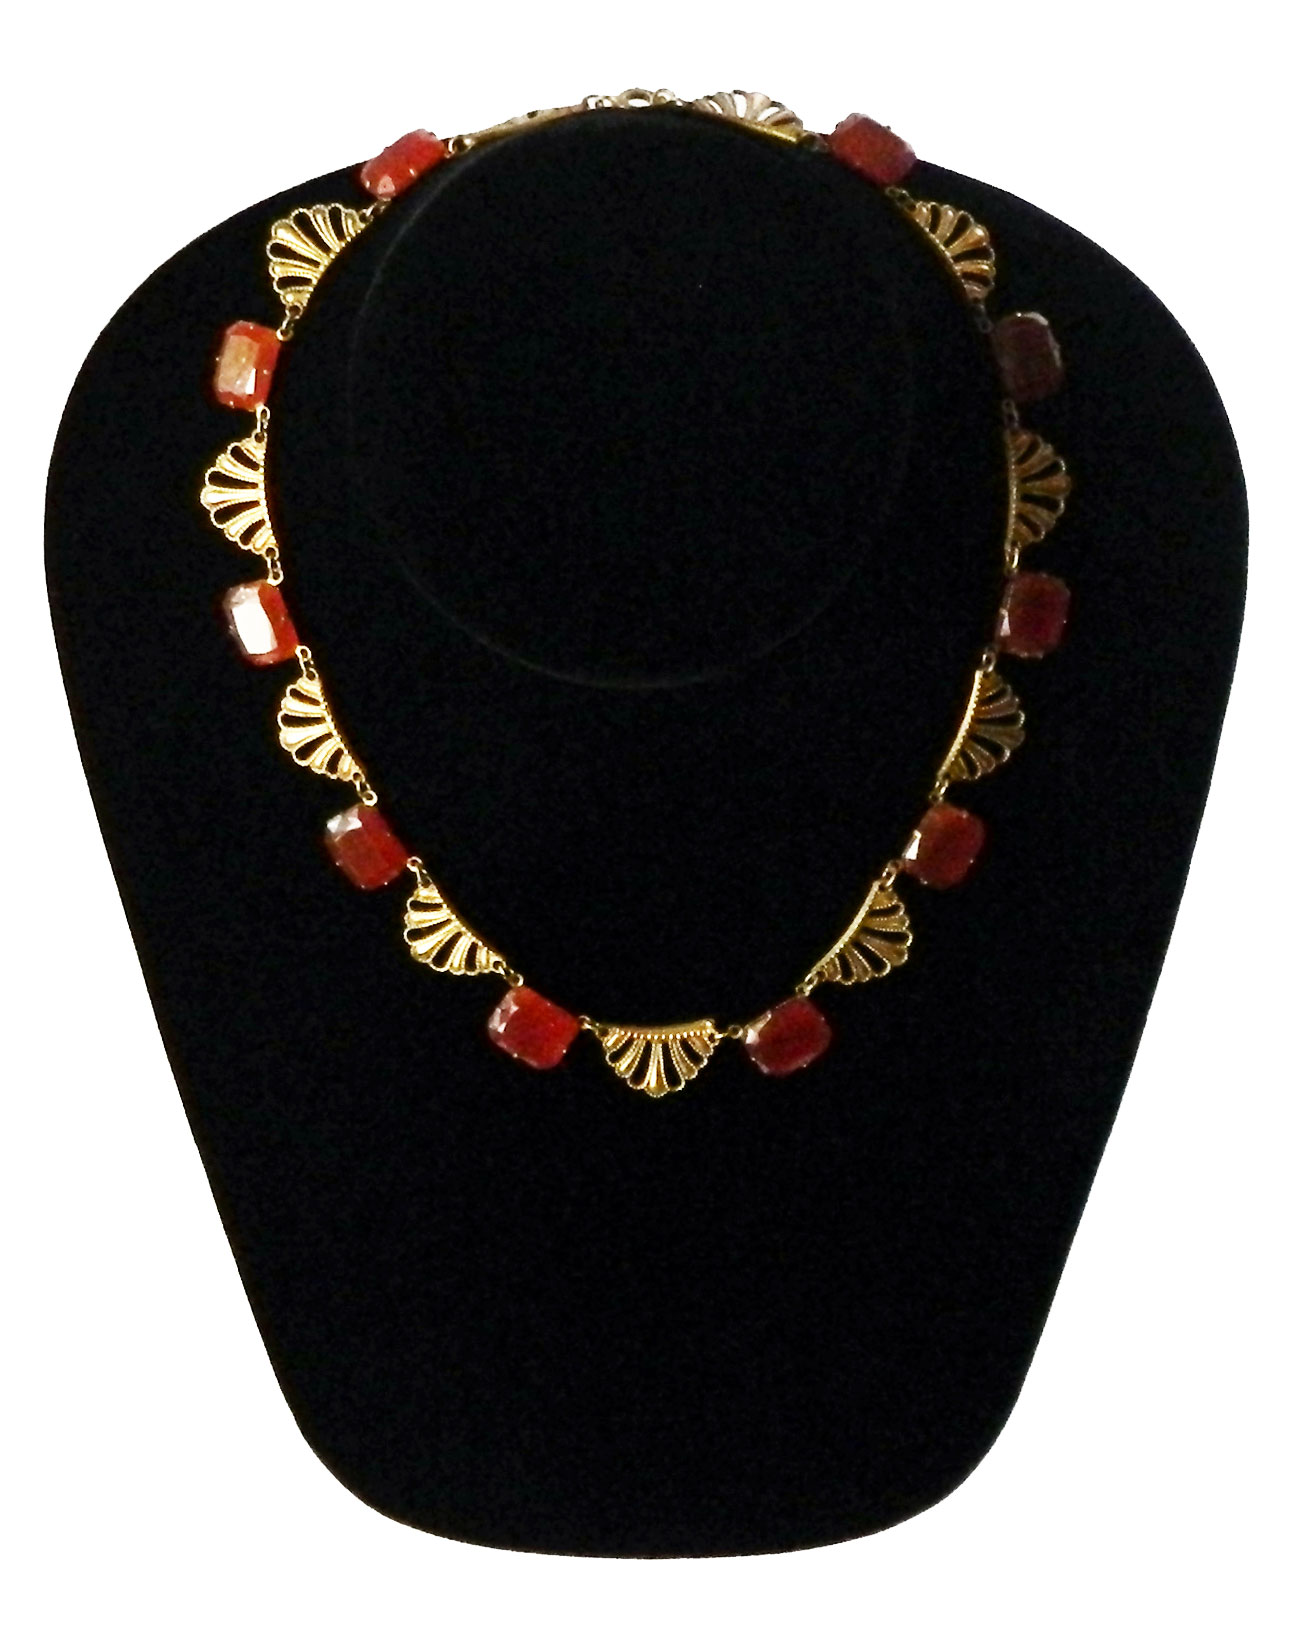 1920s Art Deco necklace